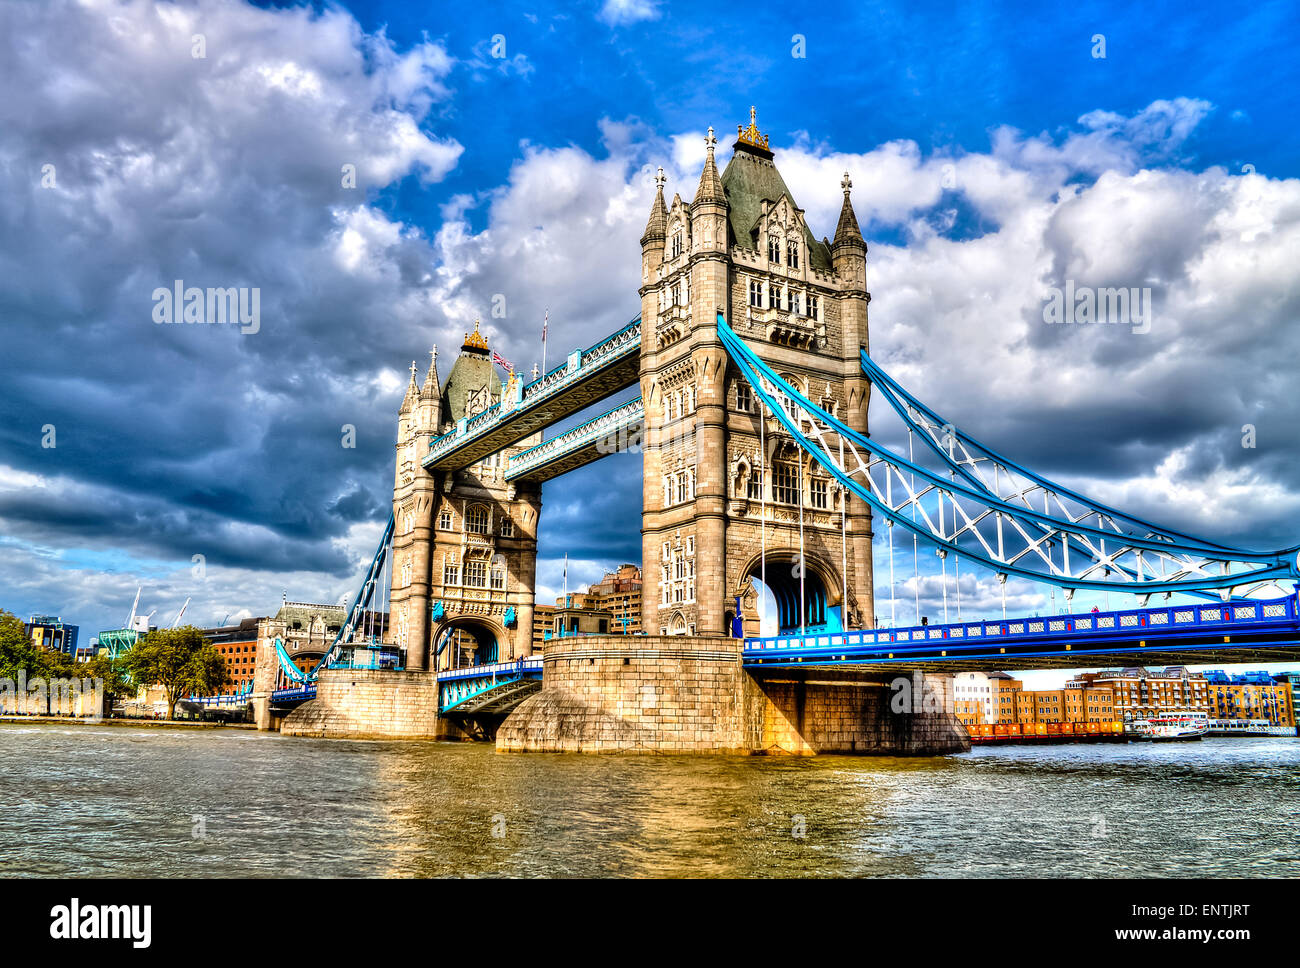 Tower Bridge, berühmte kombinierte Bascule und Hängebrücke die Themse überquert. London, Vereinigtes Königreich. HDR. Stockfoto